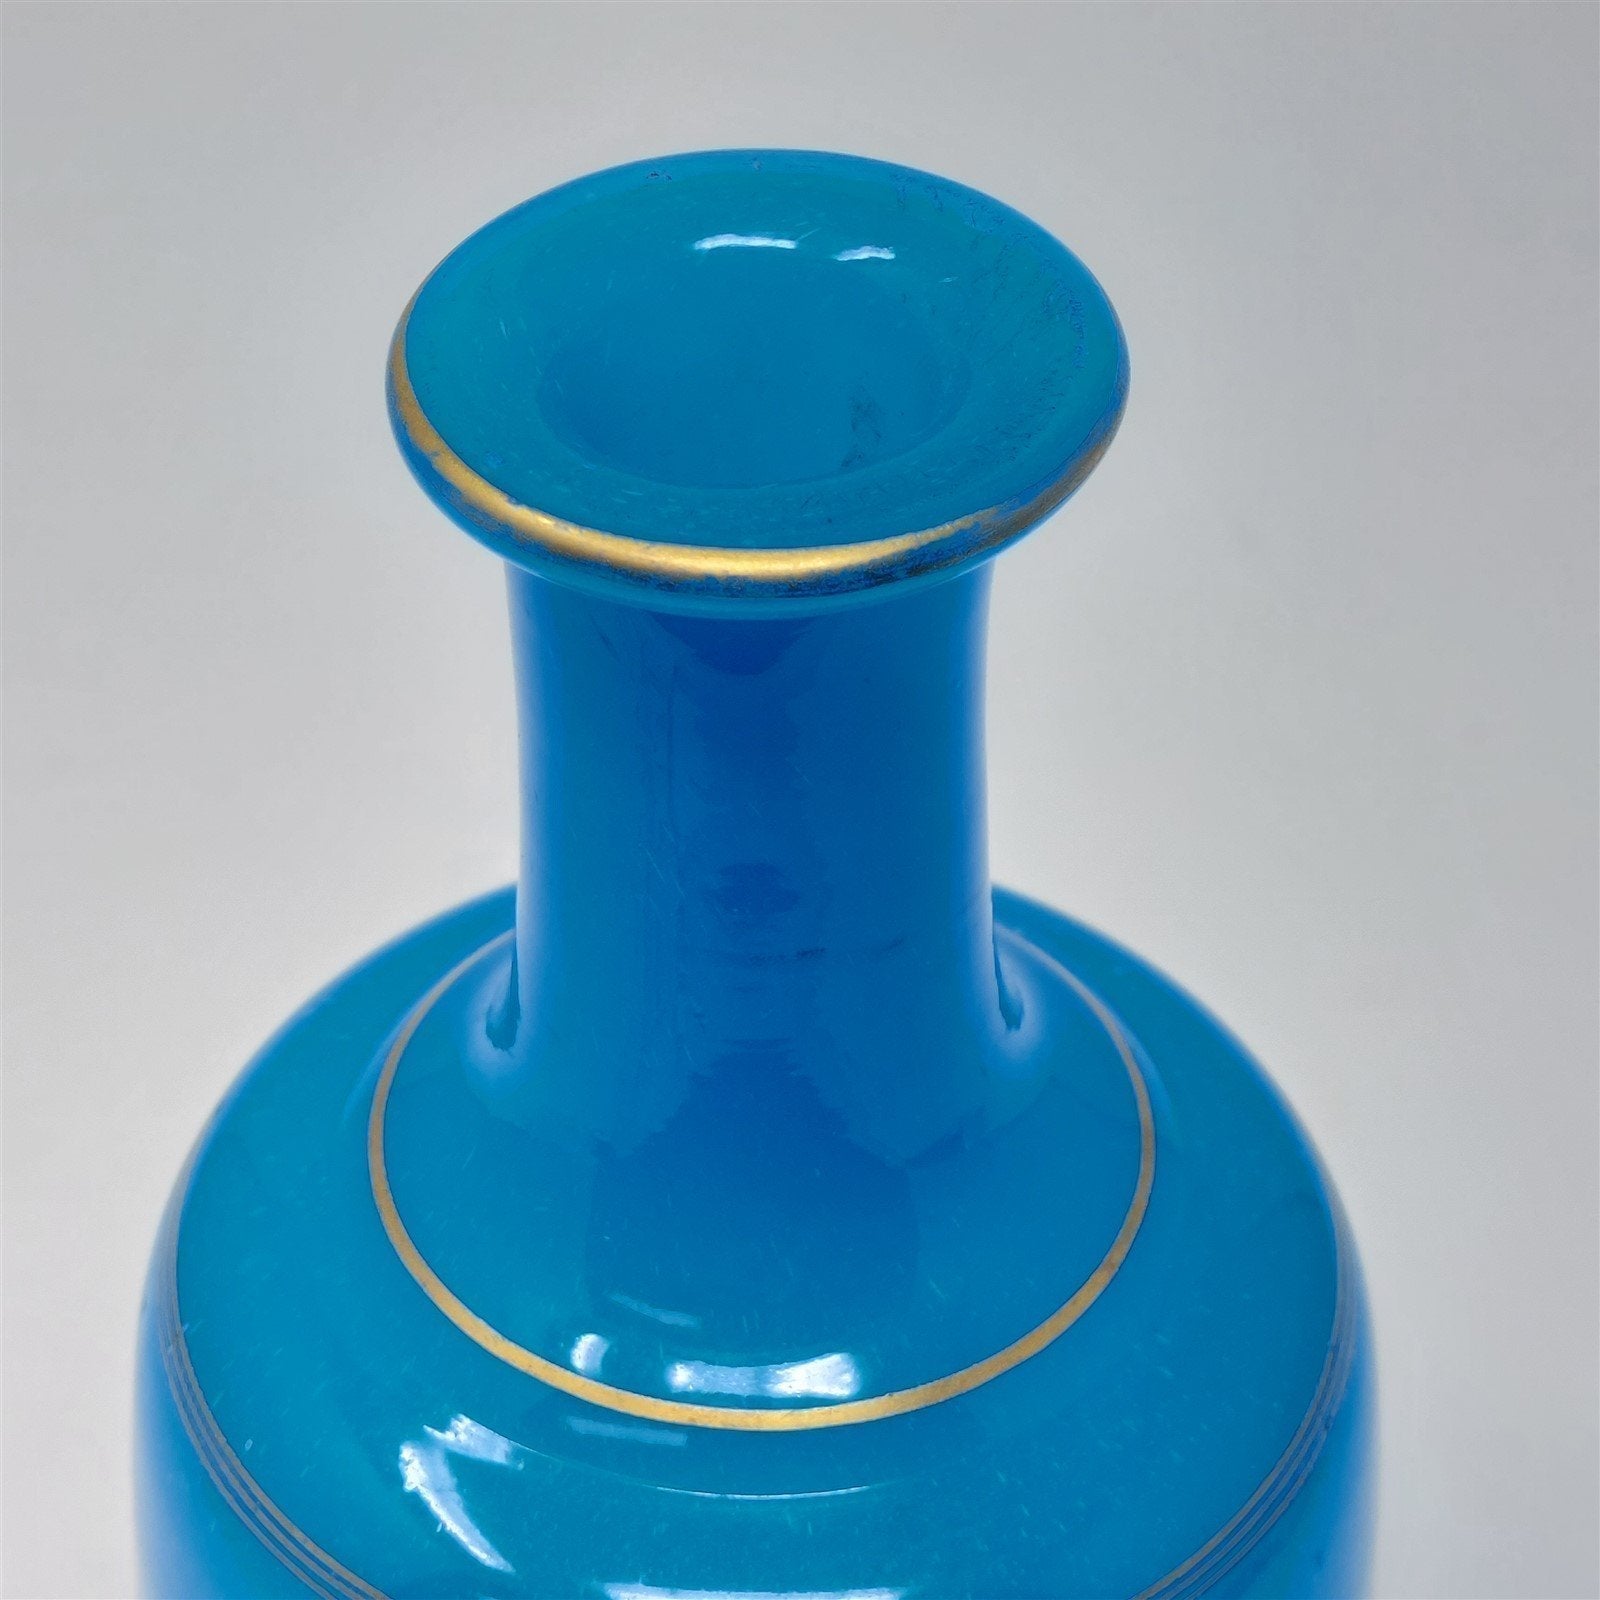 Glass Bottle Vase Hand Blown Pontil Mark Blue With Gold Trim Vintage Decor 7"